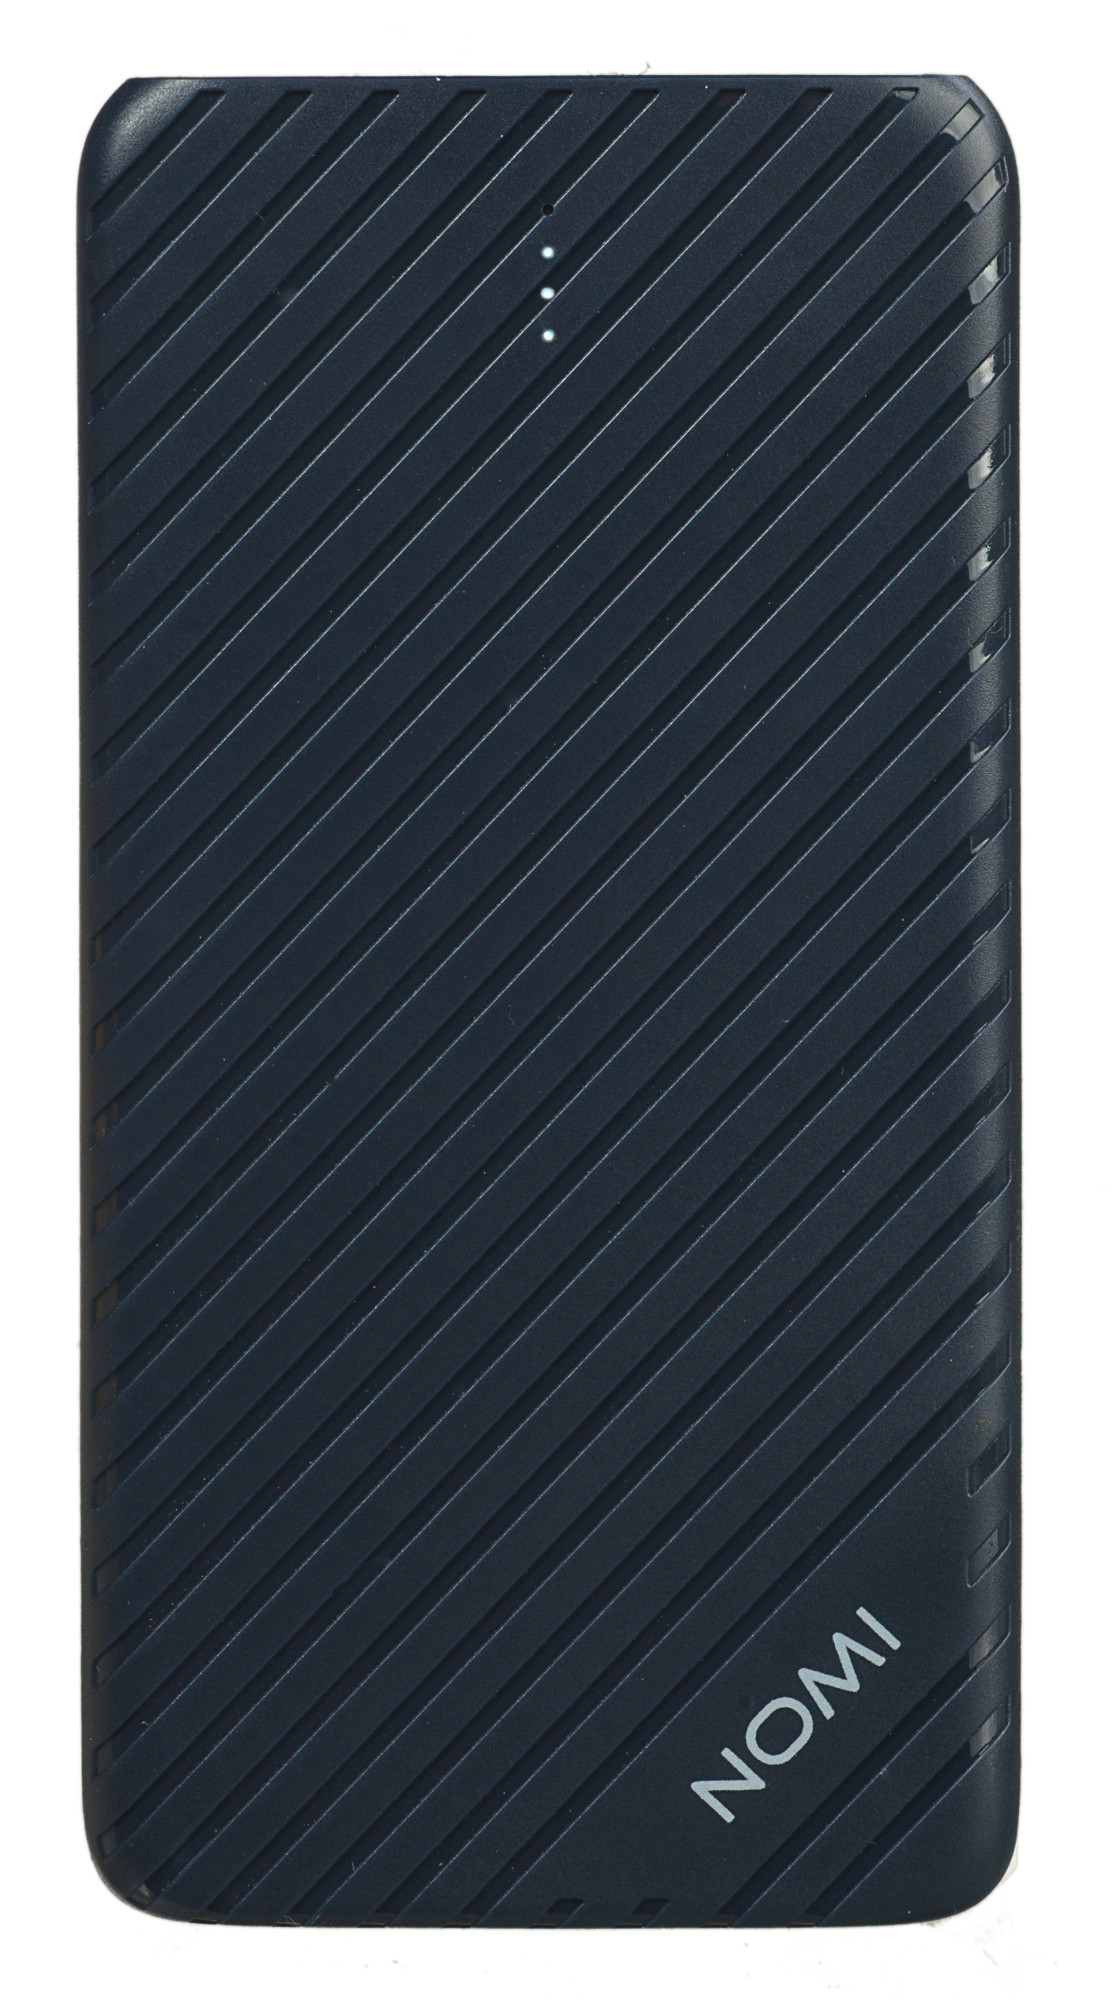 Универсальная мобильная батарея Nomi F050 5000 mAh Dark Blue (324696) в Киеве